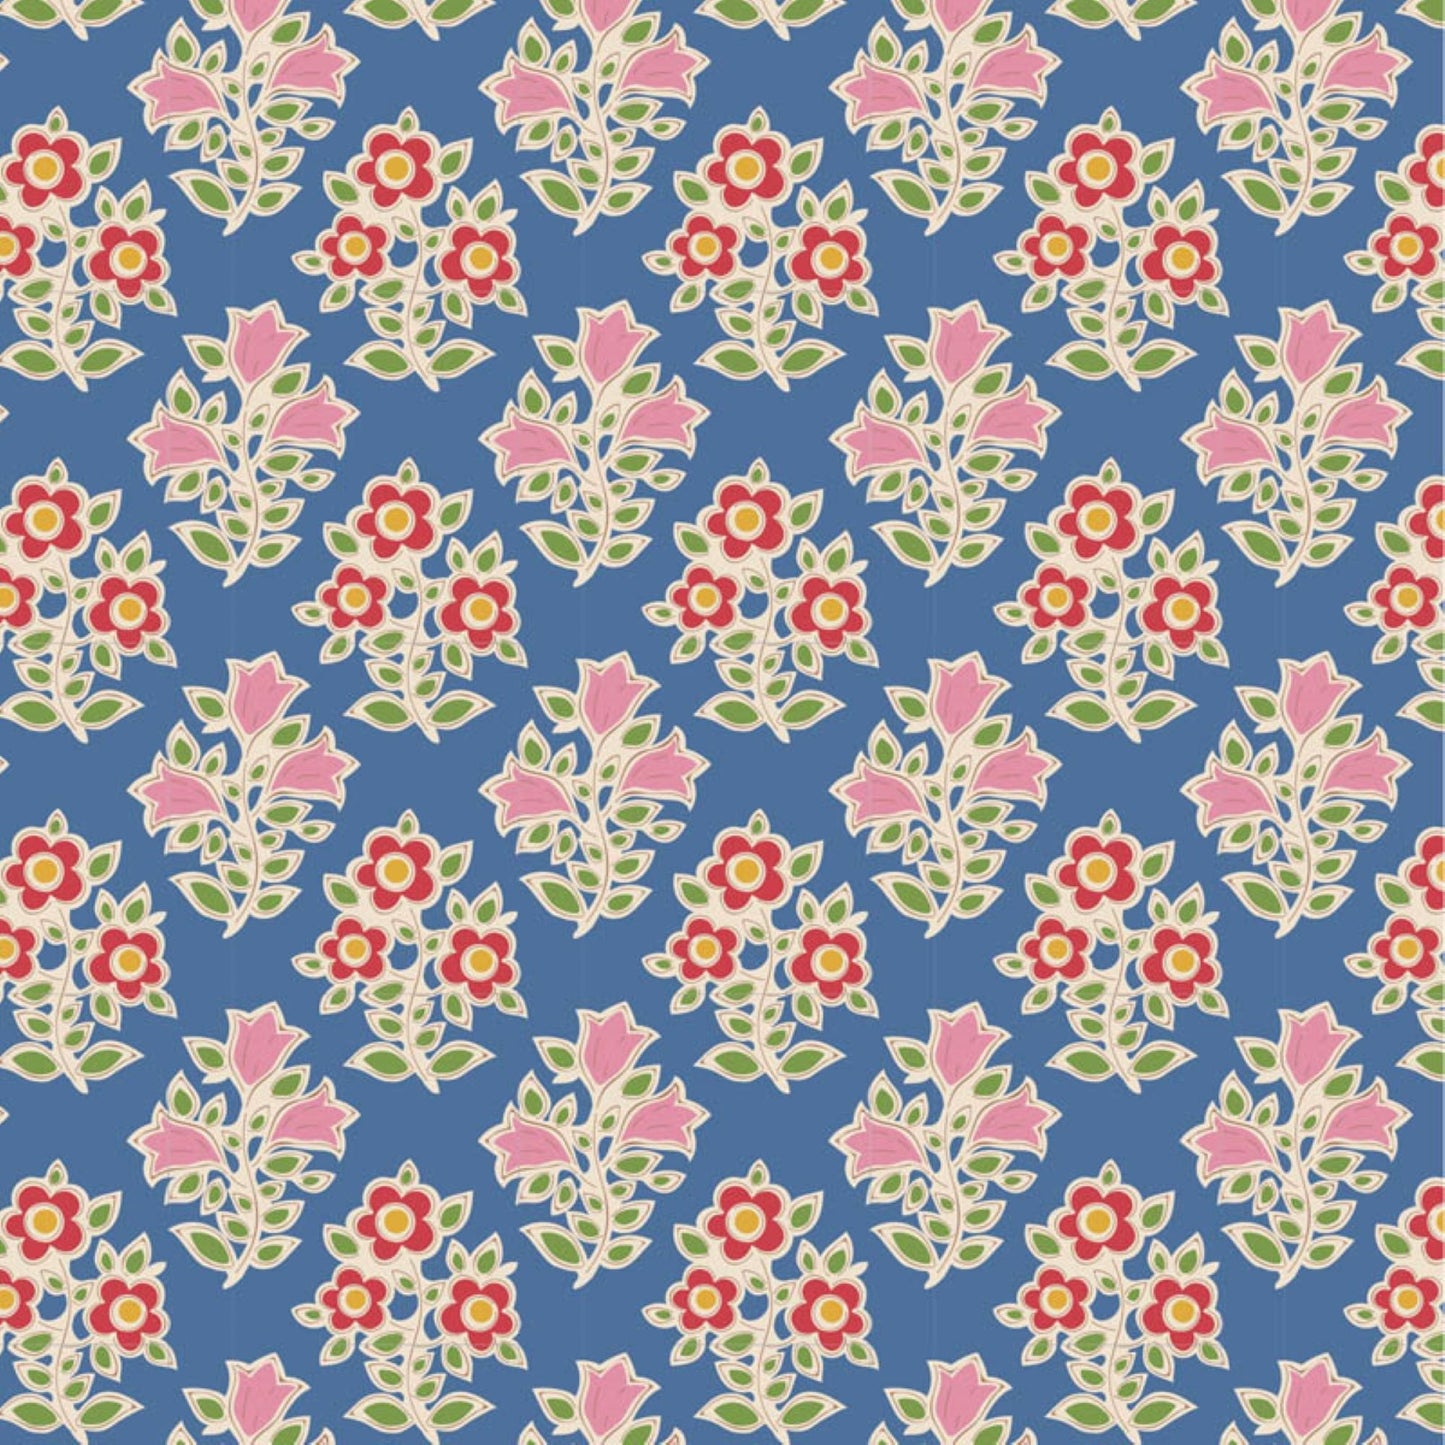 Tilda Farm Flowers floral bundle 8 Fat 16's cotton quilt fabric